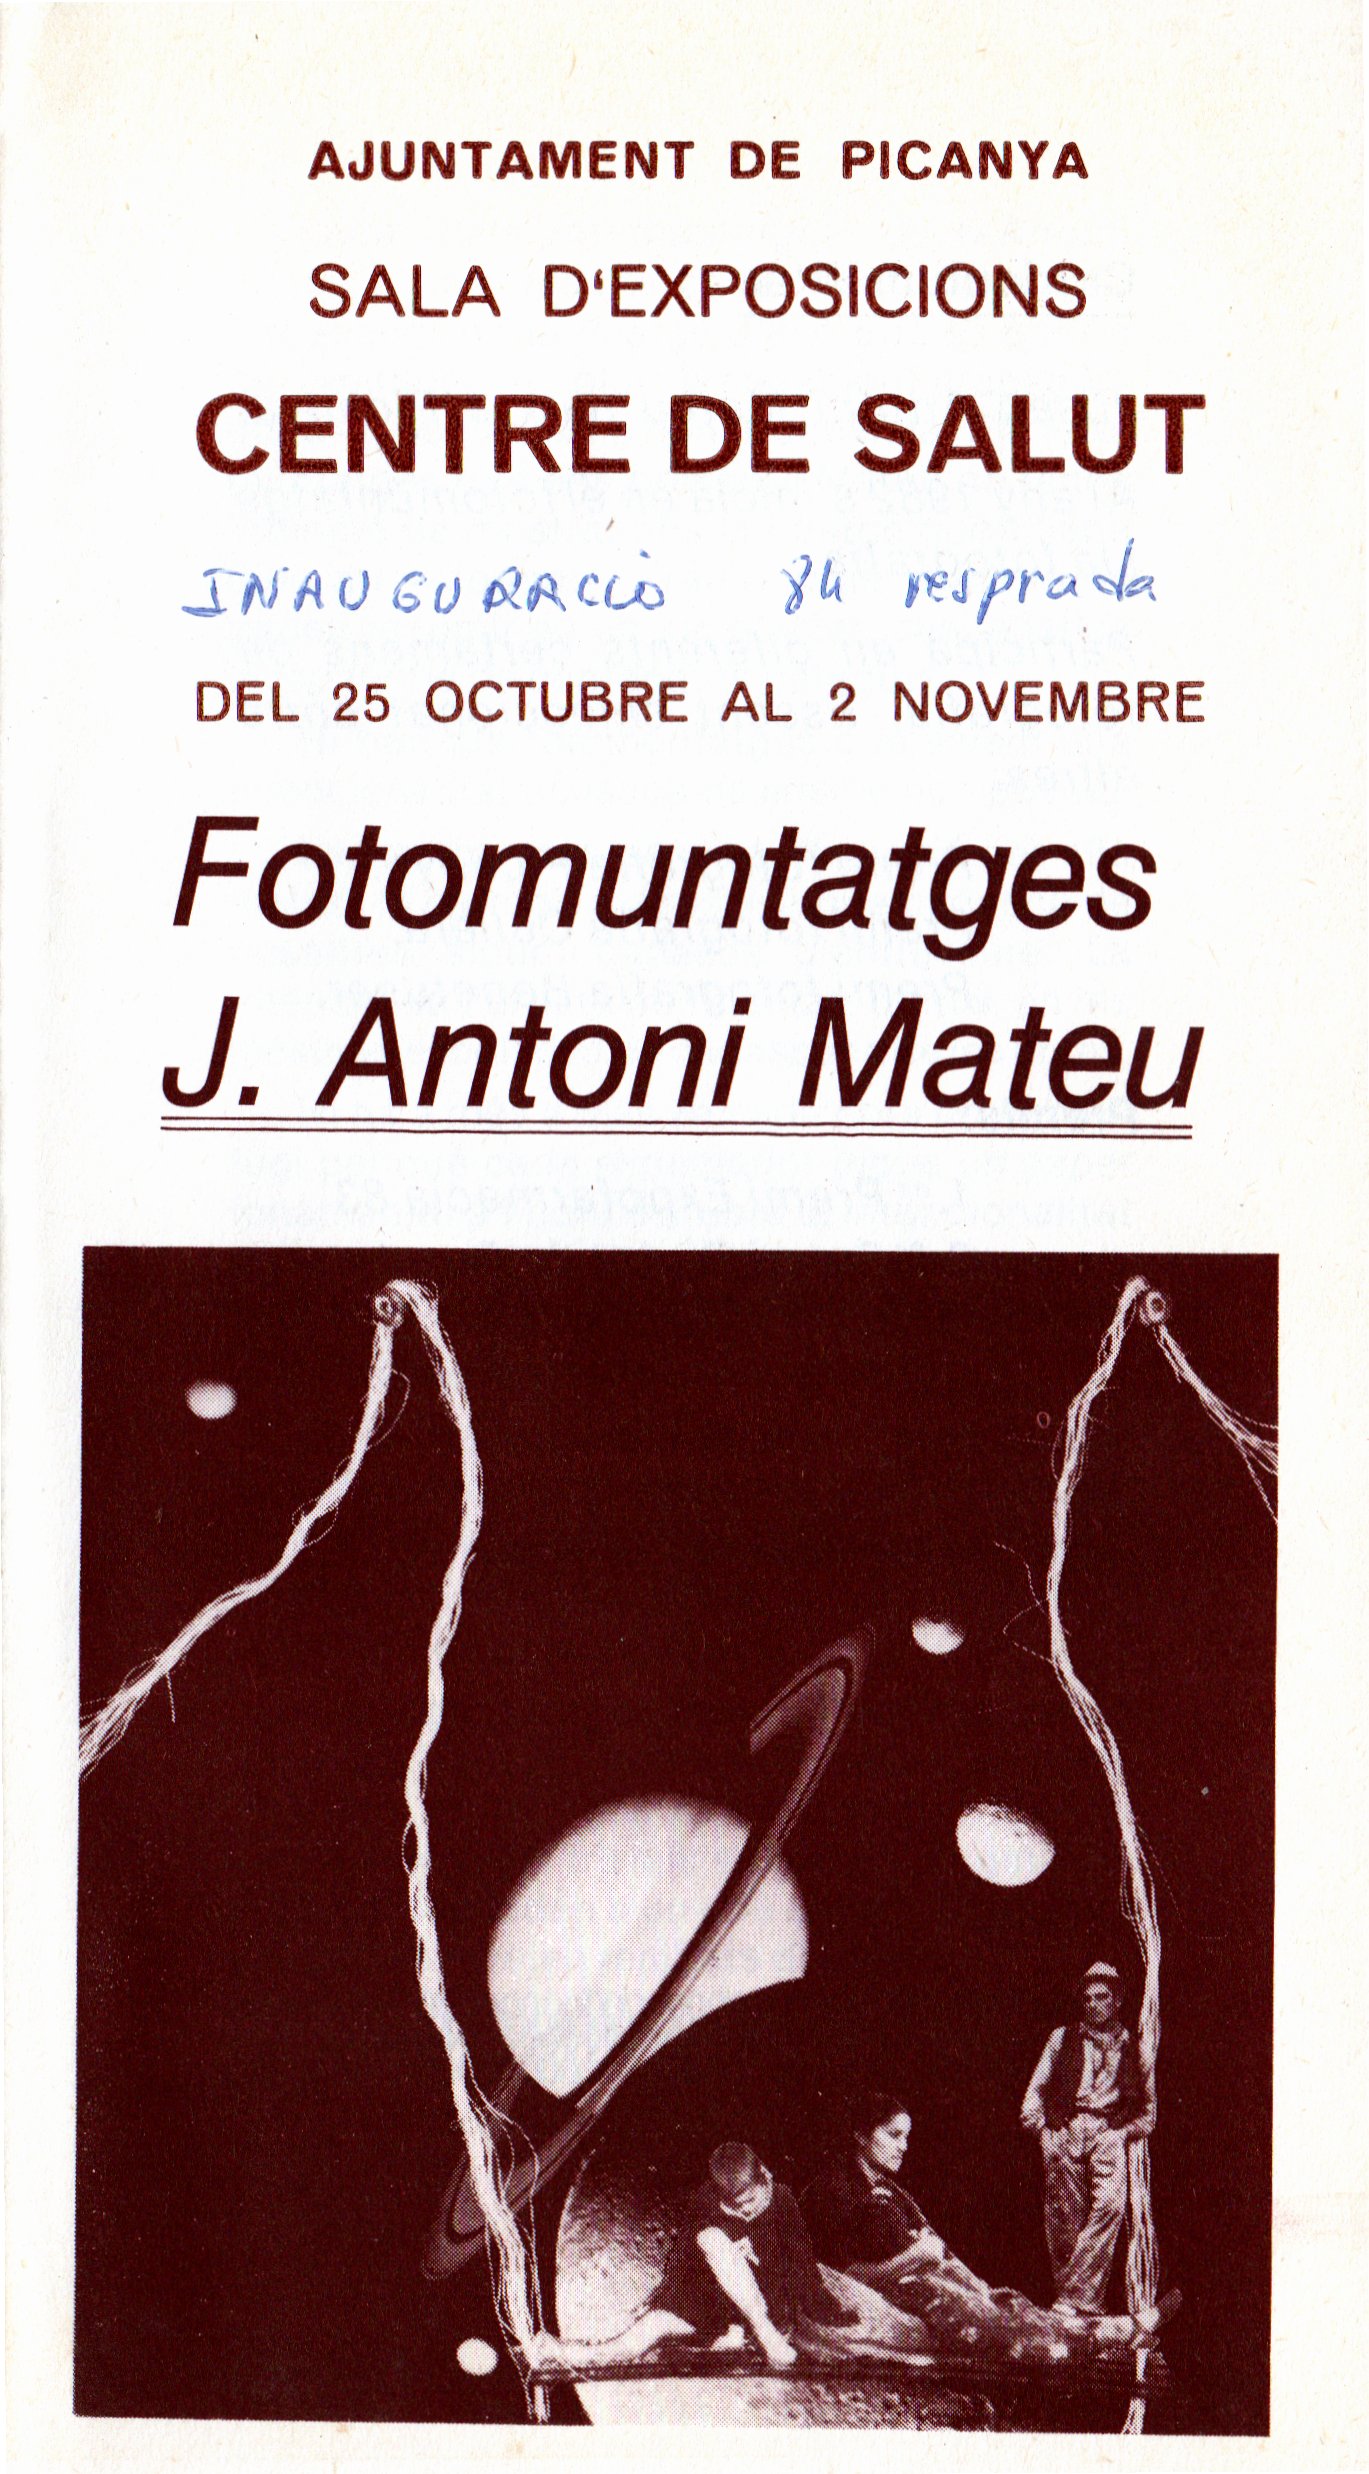 CEL-DO-A0389 - J. Antoni Mateu